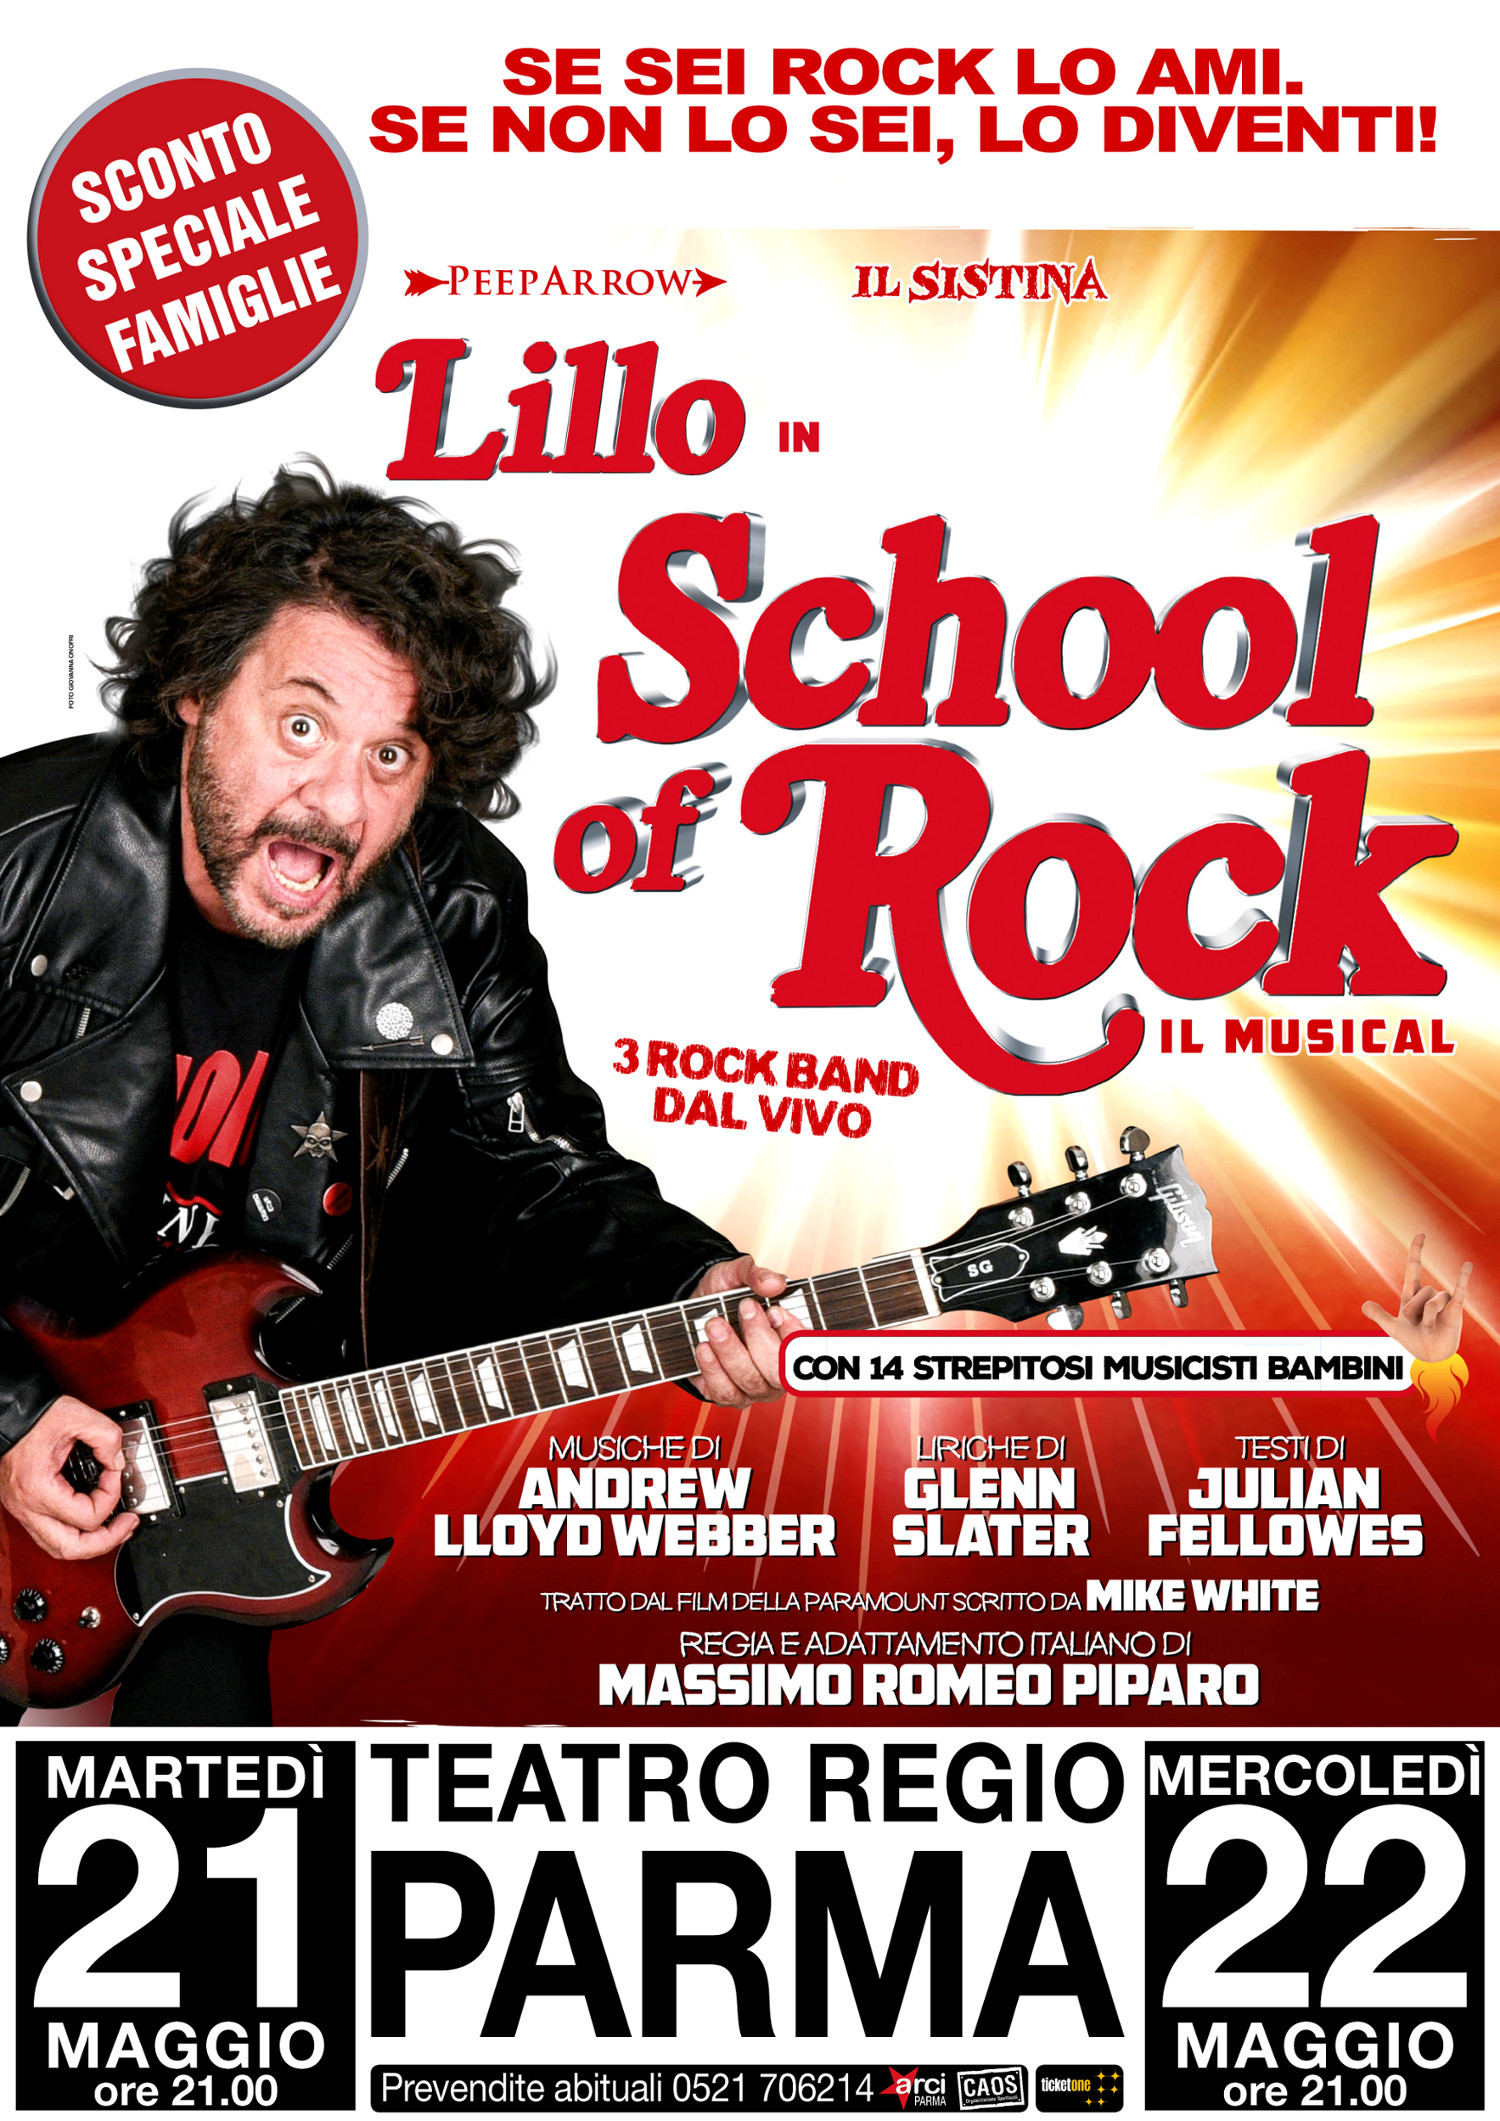 Prezzo speciale famiglie: SCHOOL OF ROCK - 21 e 22 maggio 2019 al Teatro Regio